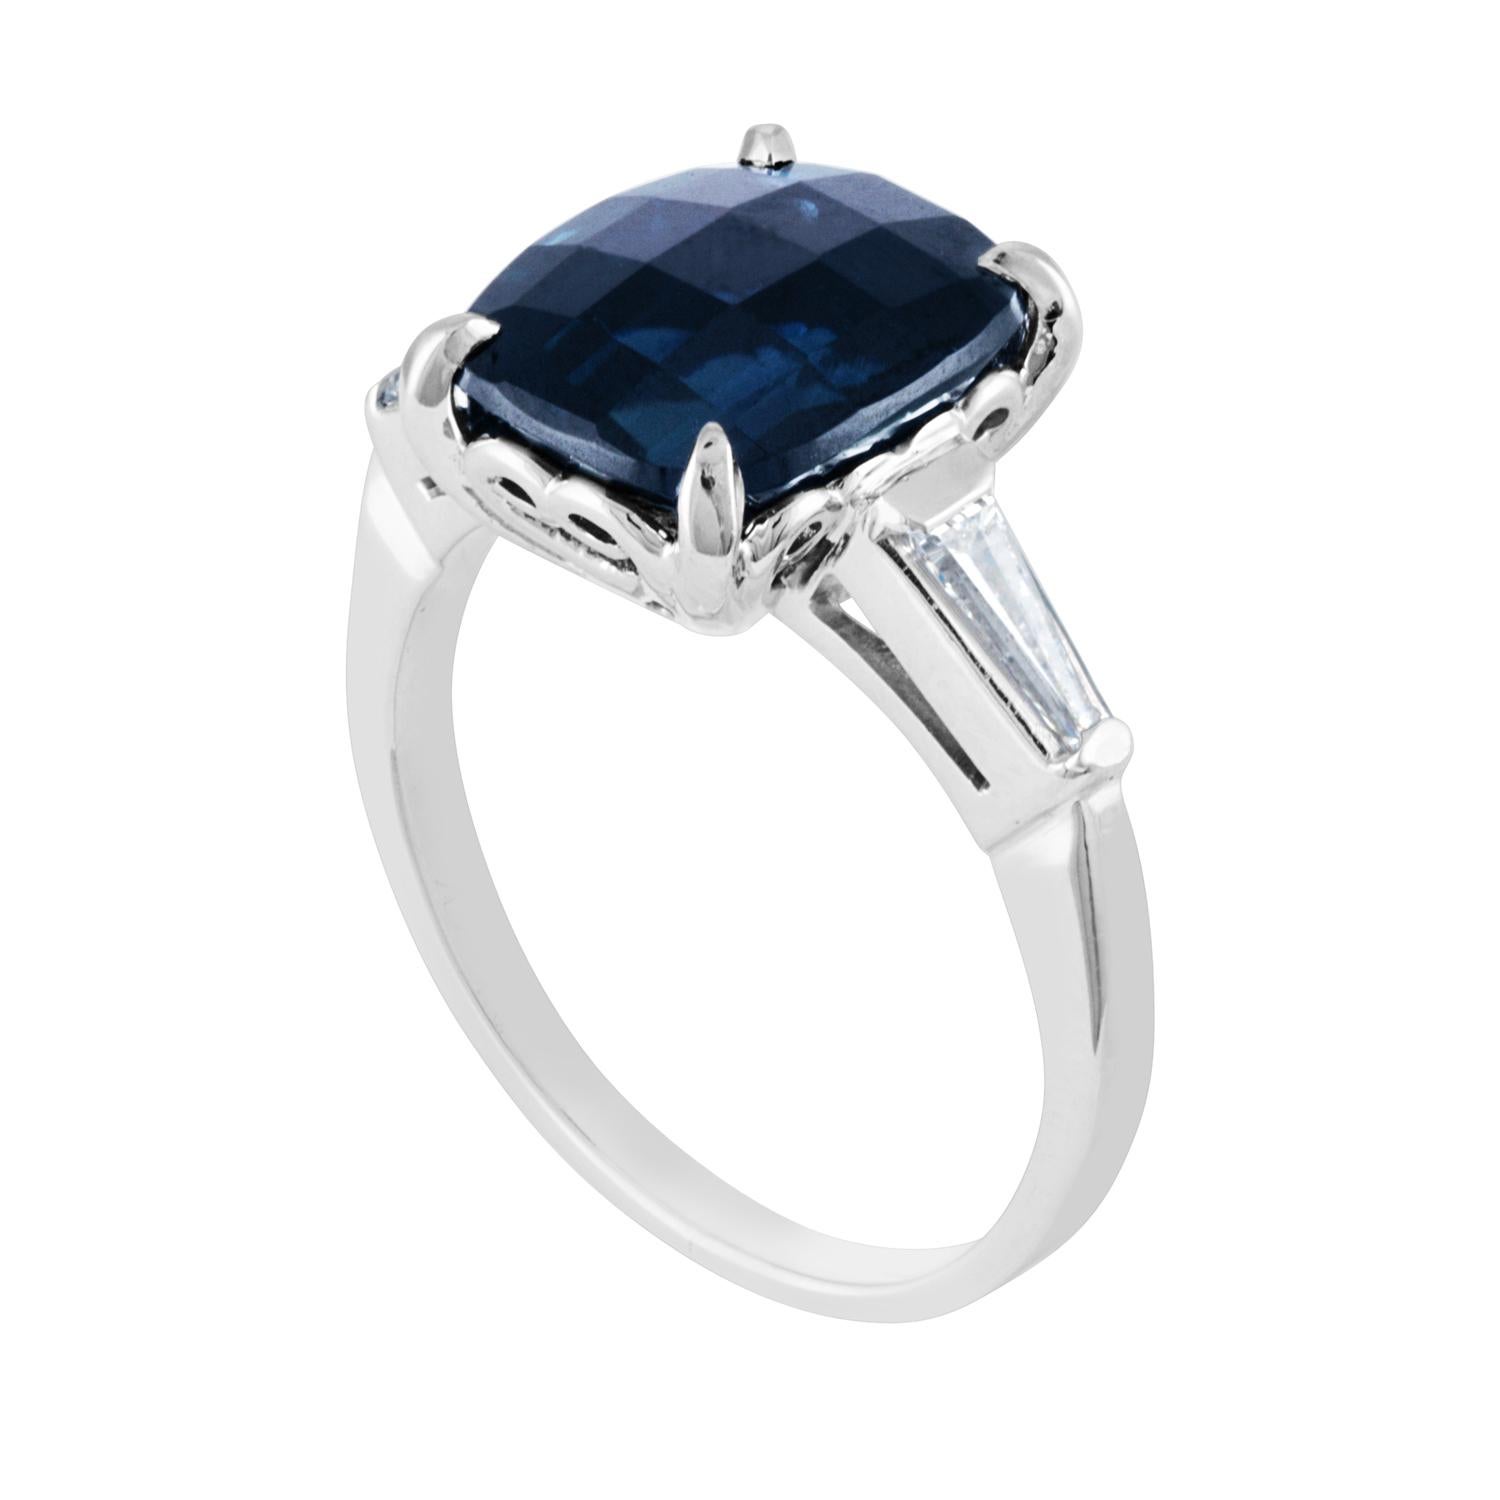 Schöner Ring mit blauem Saphir.
Der Ring ist aus Platin und 14K Weißgold.
Dies ist ein australischer blauer Saphir von 5,54 Karat.
Der Stein ist ein Cushion Checker Board Cut.
Der Stein ist AGL-zertifiziert, beheizt
Es sind 0,25 Karat Diamanten F